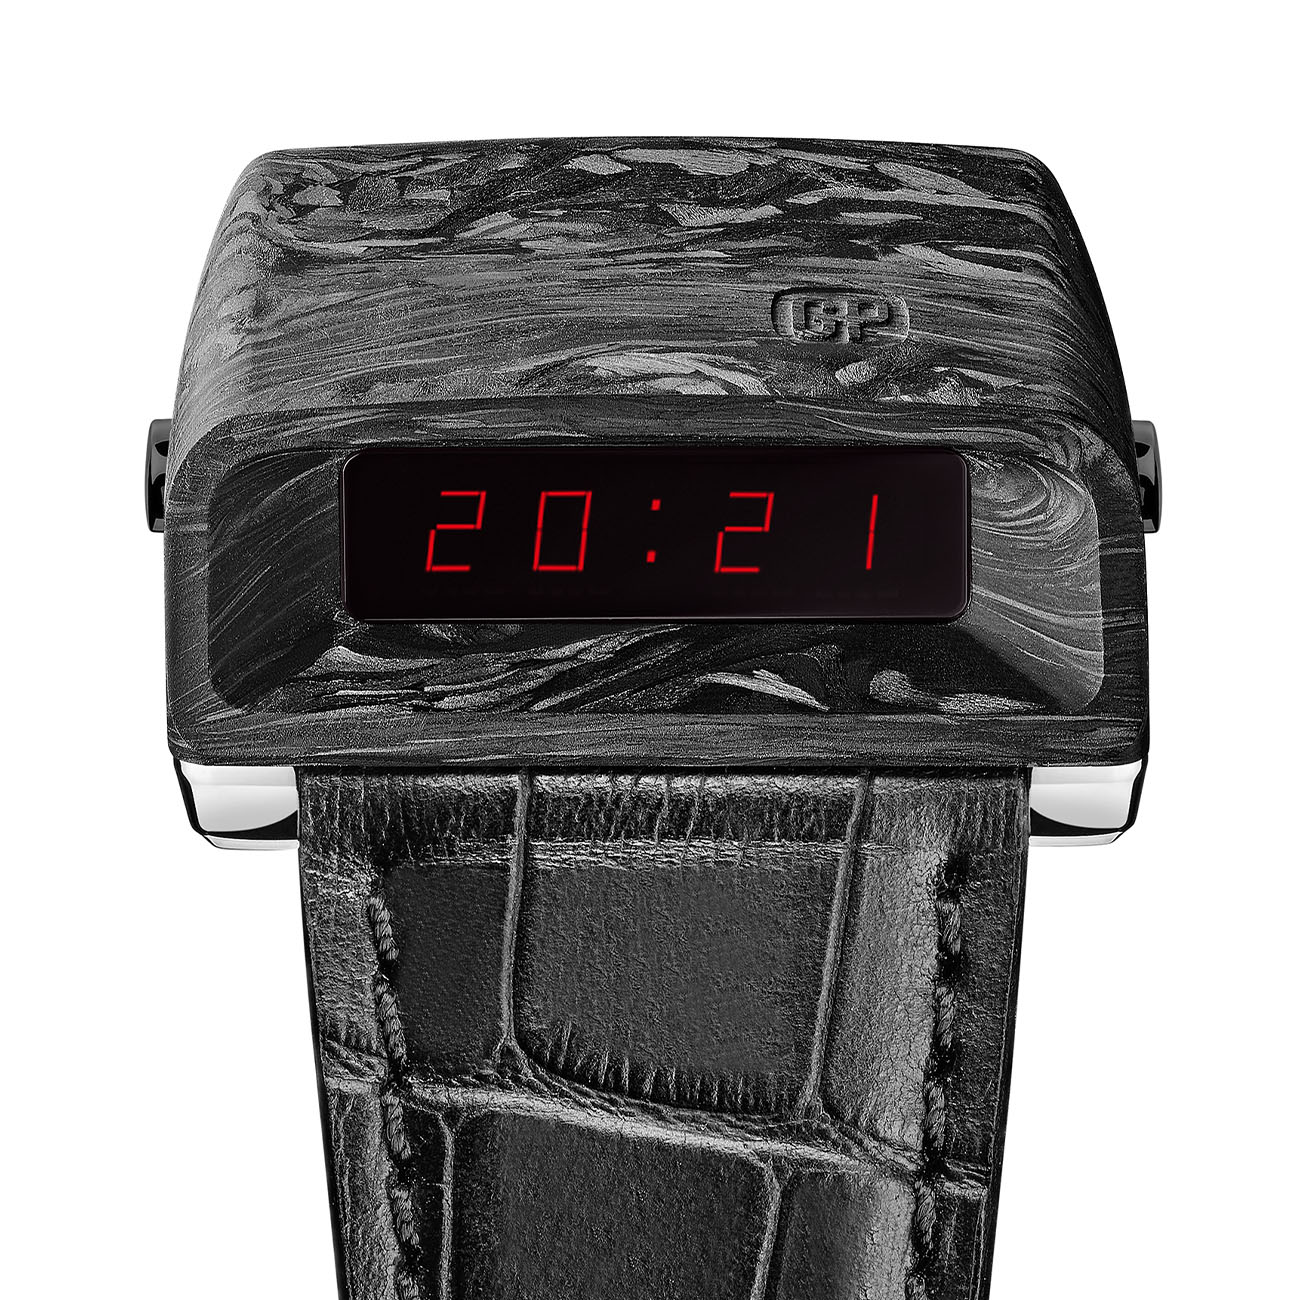 Обзор всех уникальных часов, которые будут выставлены на аукцион Only Watch 2021